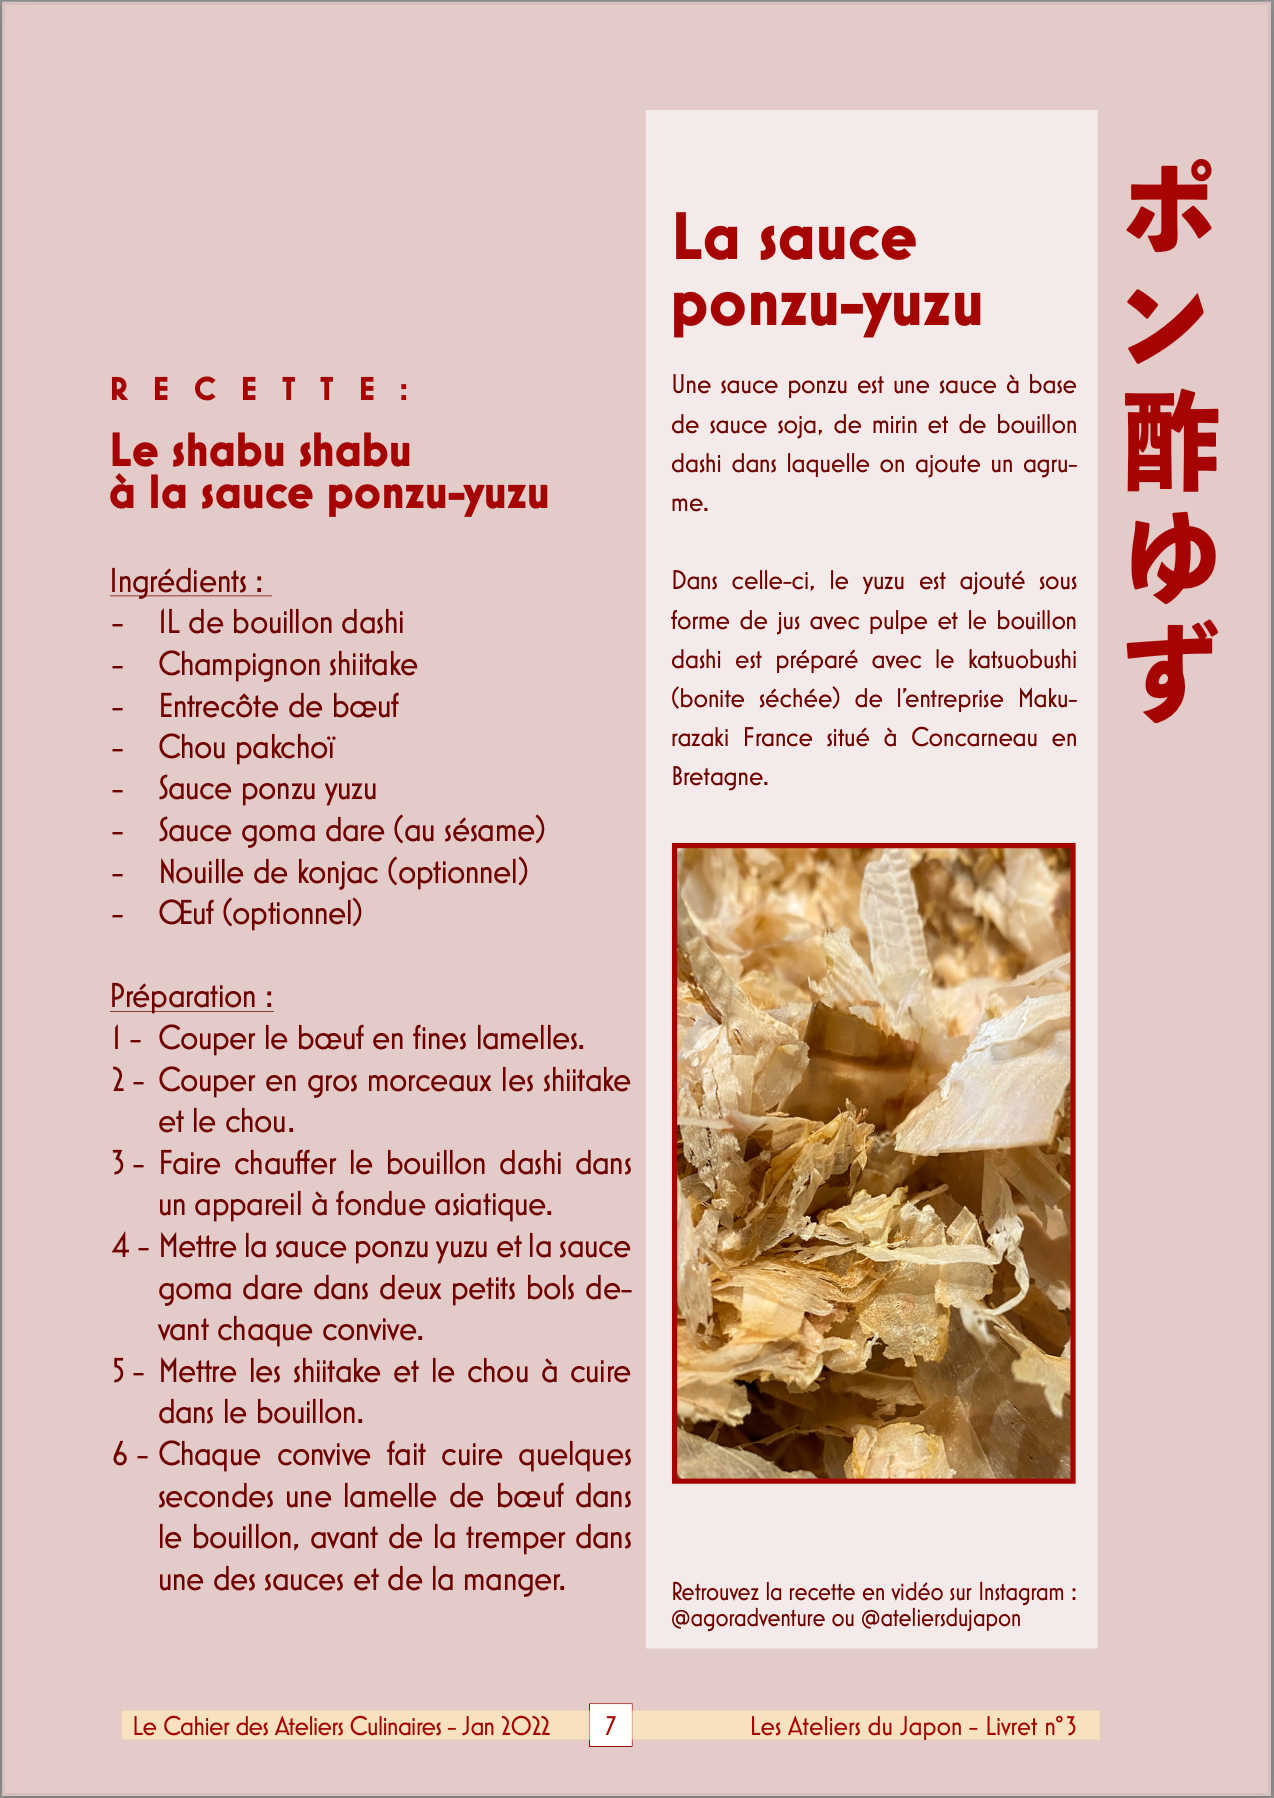 Sauce Ponzu yuzu - recette shabu shabu Les Ateliers du Japon